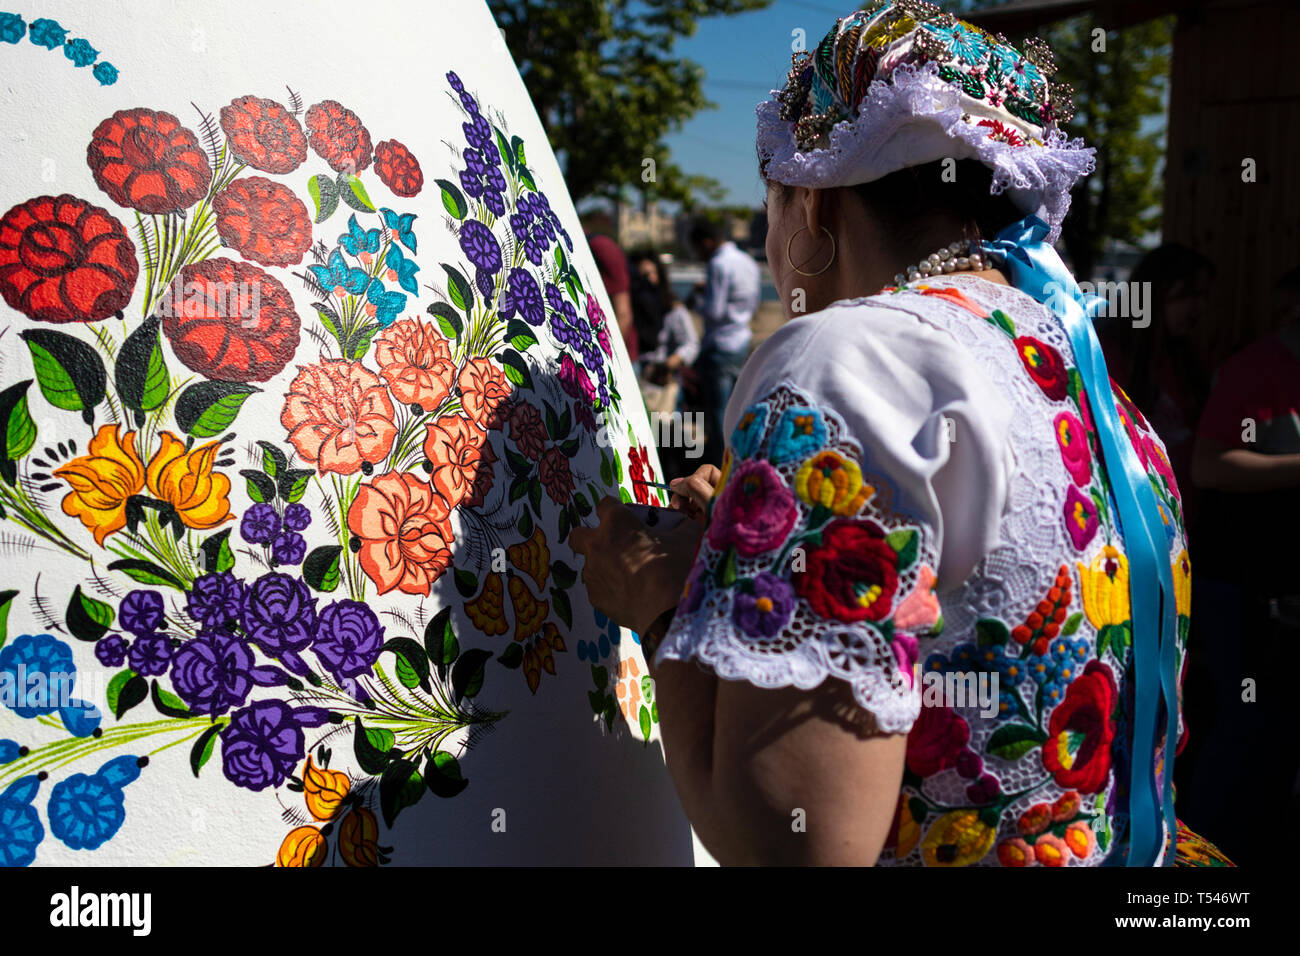 BUDAPEST/Hongrie - 04.21.2019 : un oeuf de Pâques géant blanc est décoré de motifs floraux folklore par une jeune femme portant Hungaria traditionnels Banque D'Images